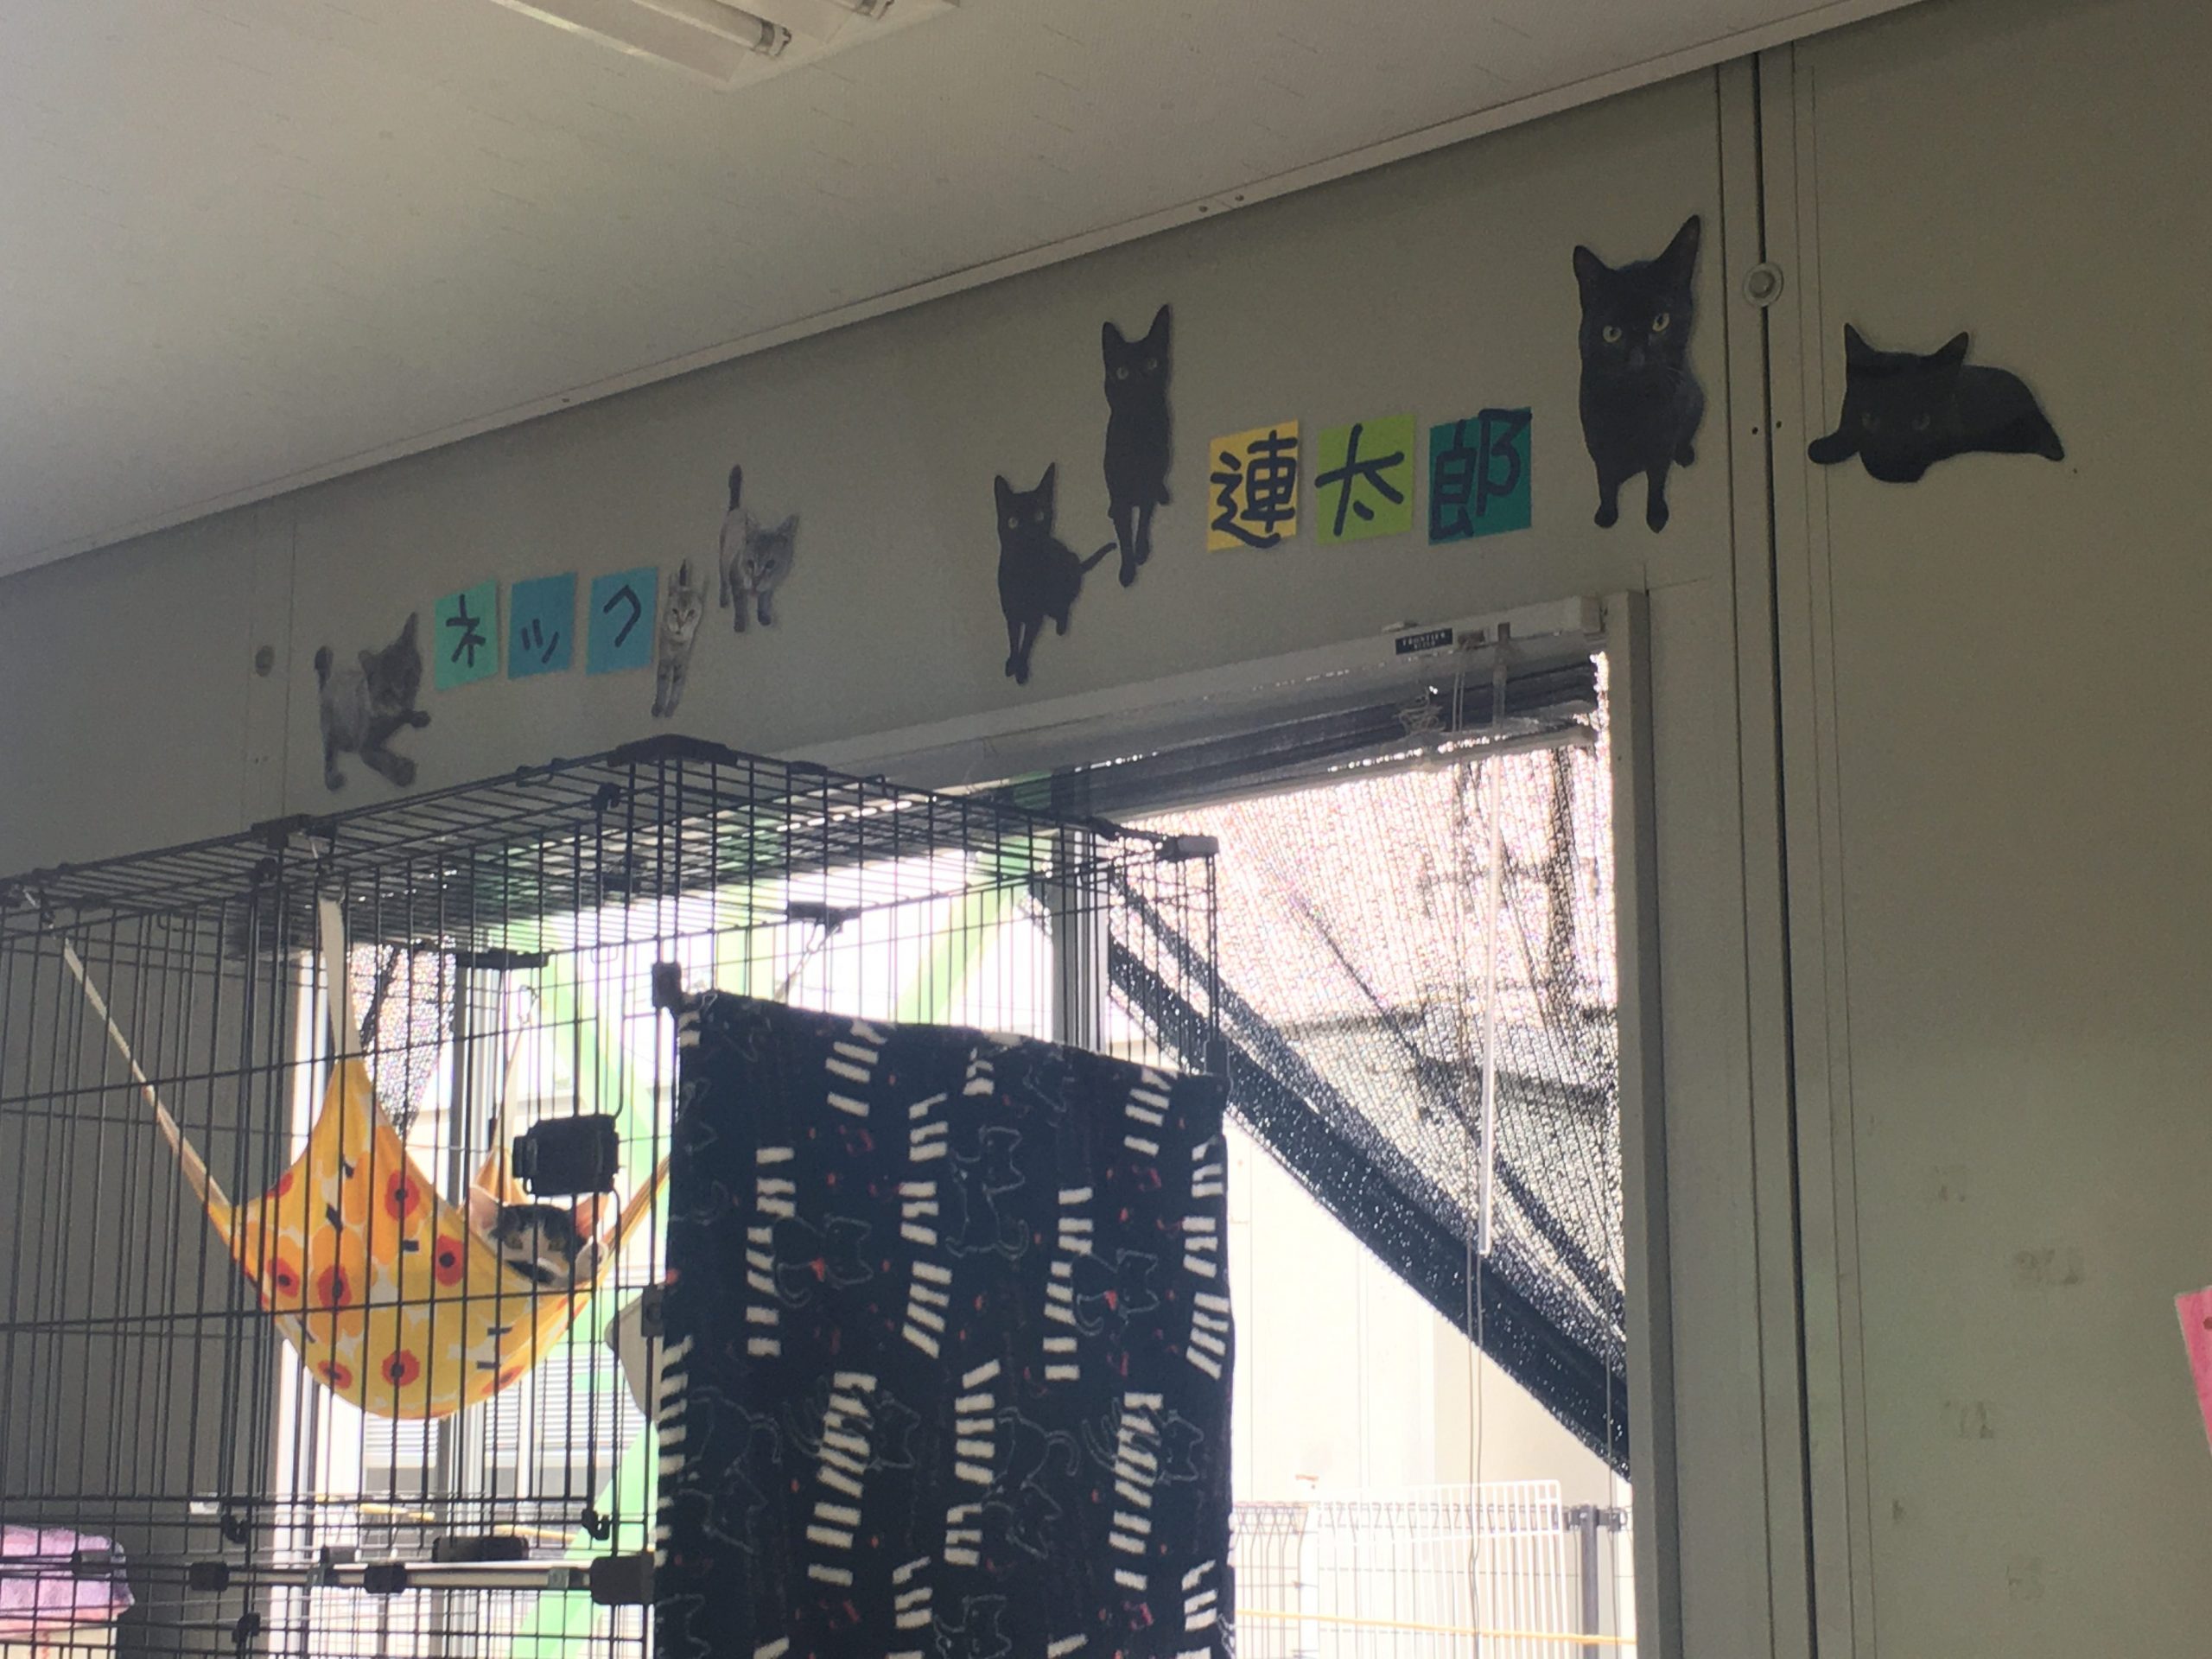 熊本県動物愛護センター
ハンモックと猫